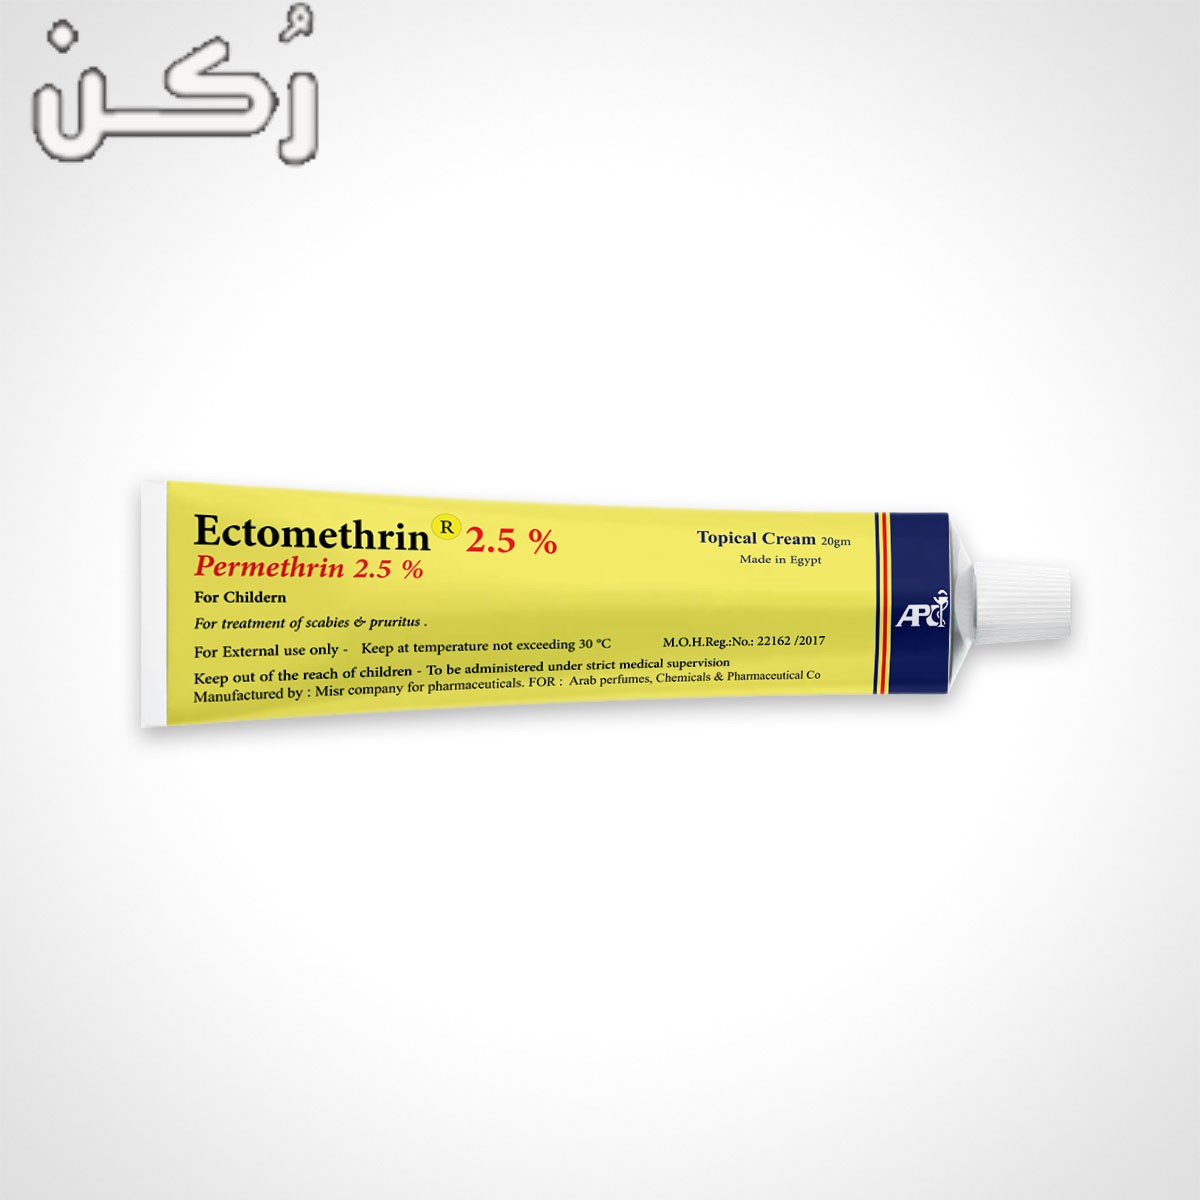 اكتومثرين Ectomethrin لعلاج الجرب والحكة الجلدية